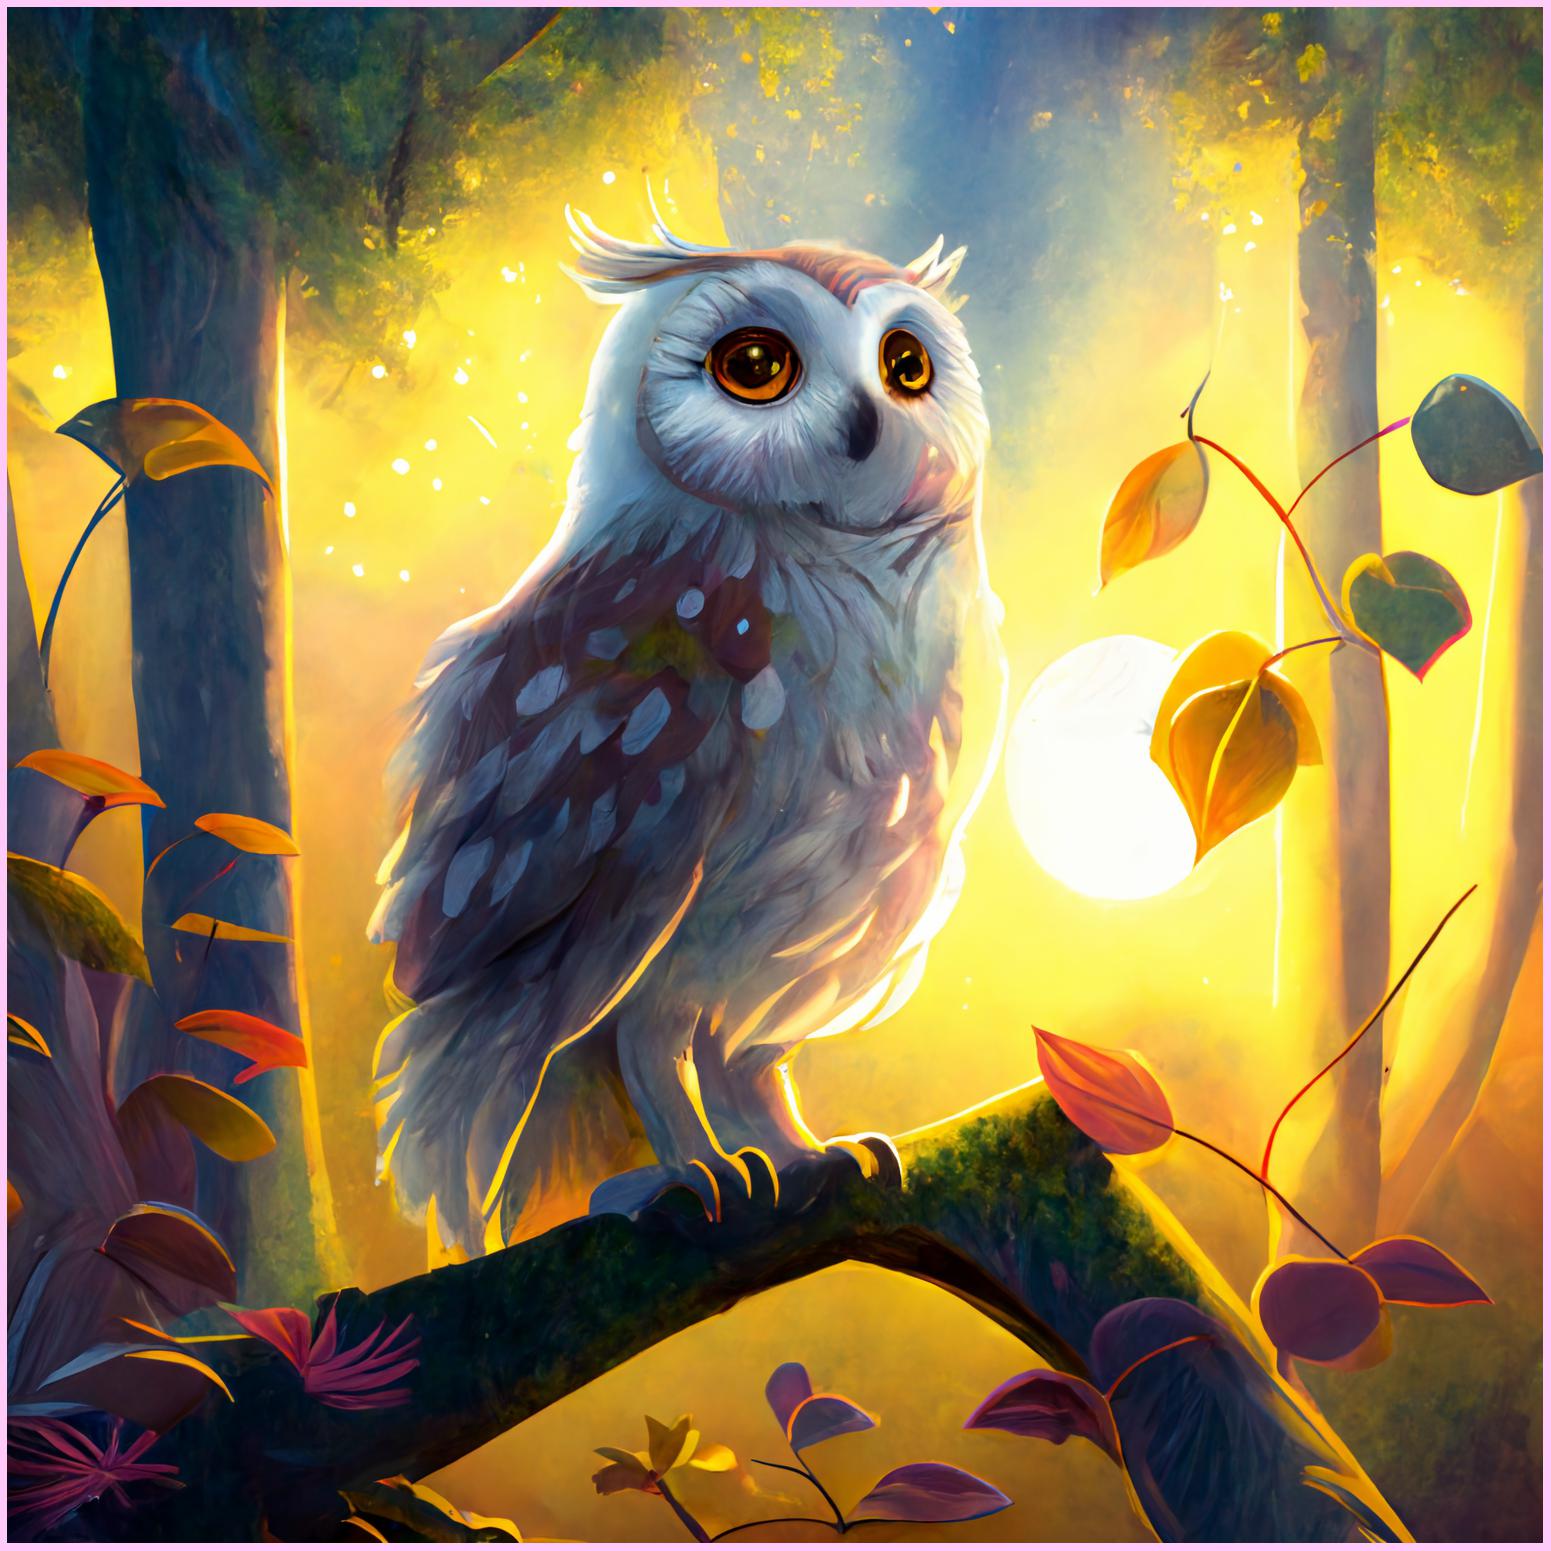 Finished Diamond Painting Art - Owl